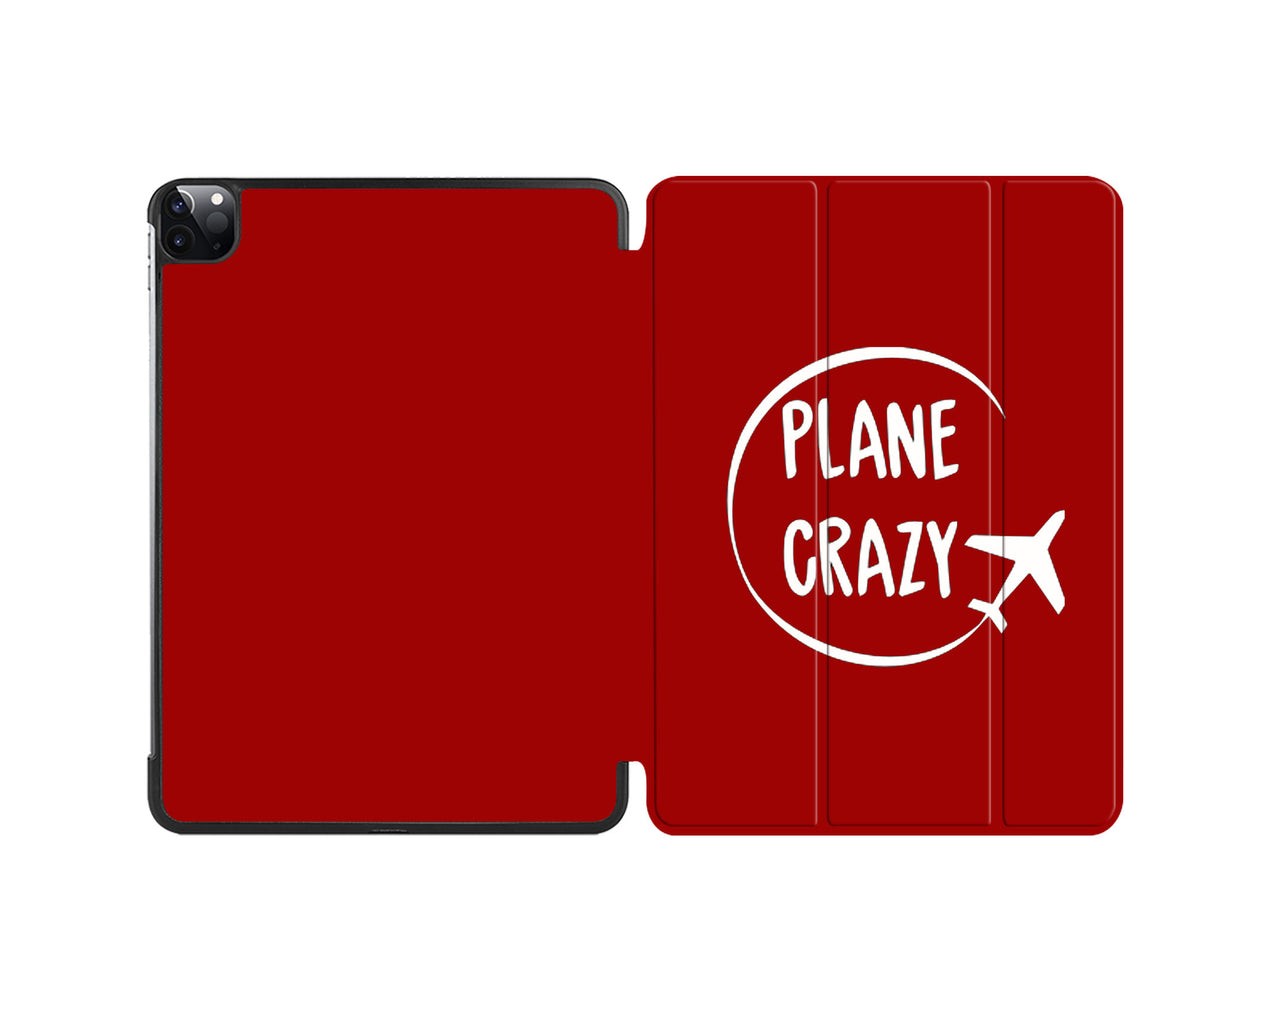 Plane Crazy Designed iPad Cases